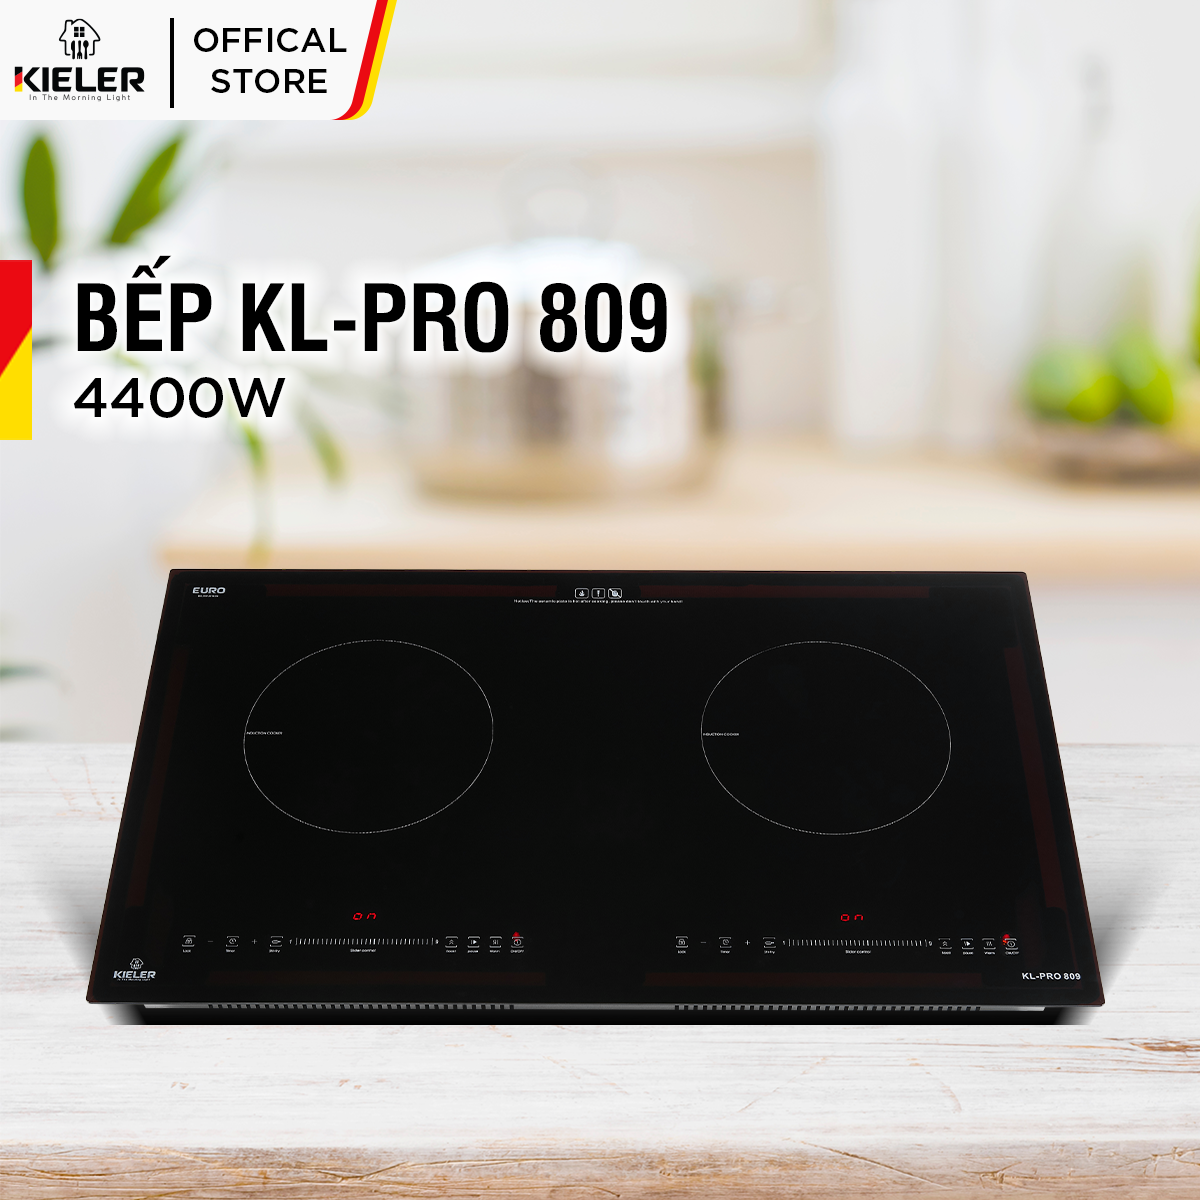 Bếp điện từ đôi Kieler KL-PRO809 mặt kính Euro Kieler Platinum, Bếp điện từ có chế độ cảm ứng chống tràn 4400W - Hàng Chính Hãng